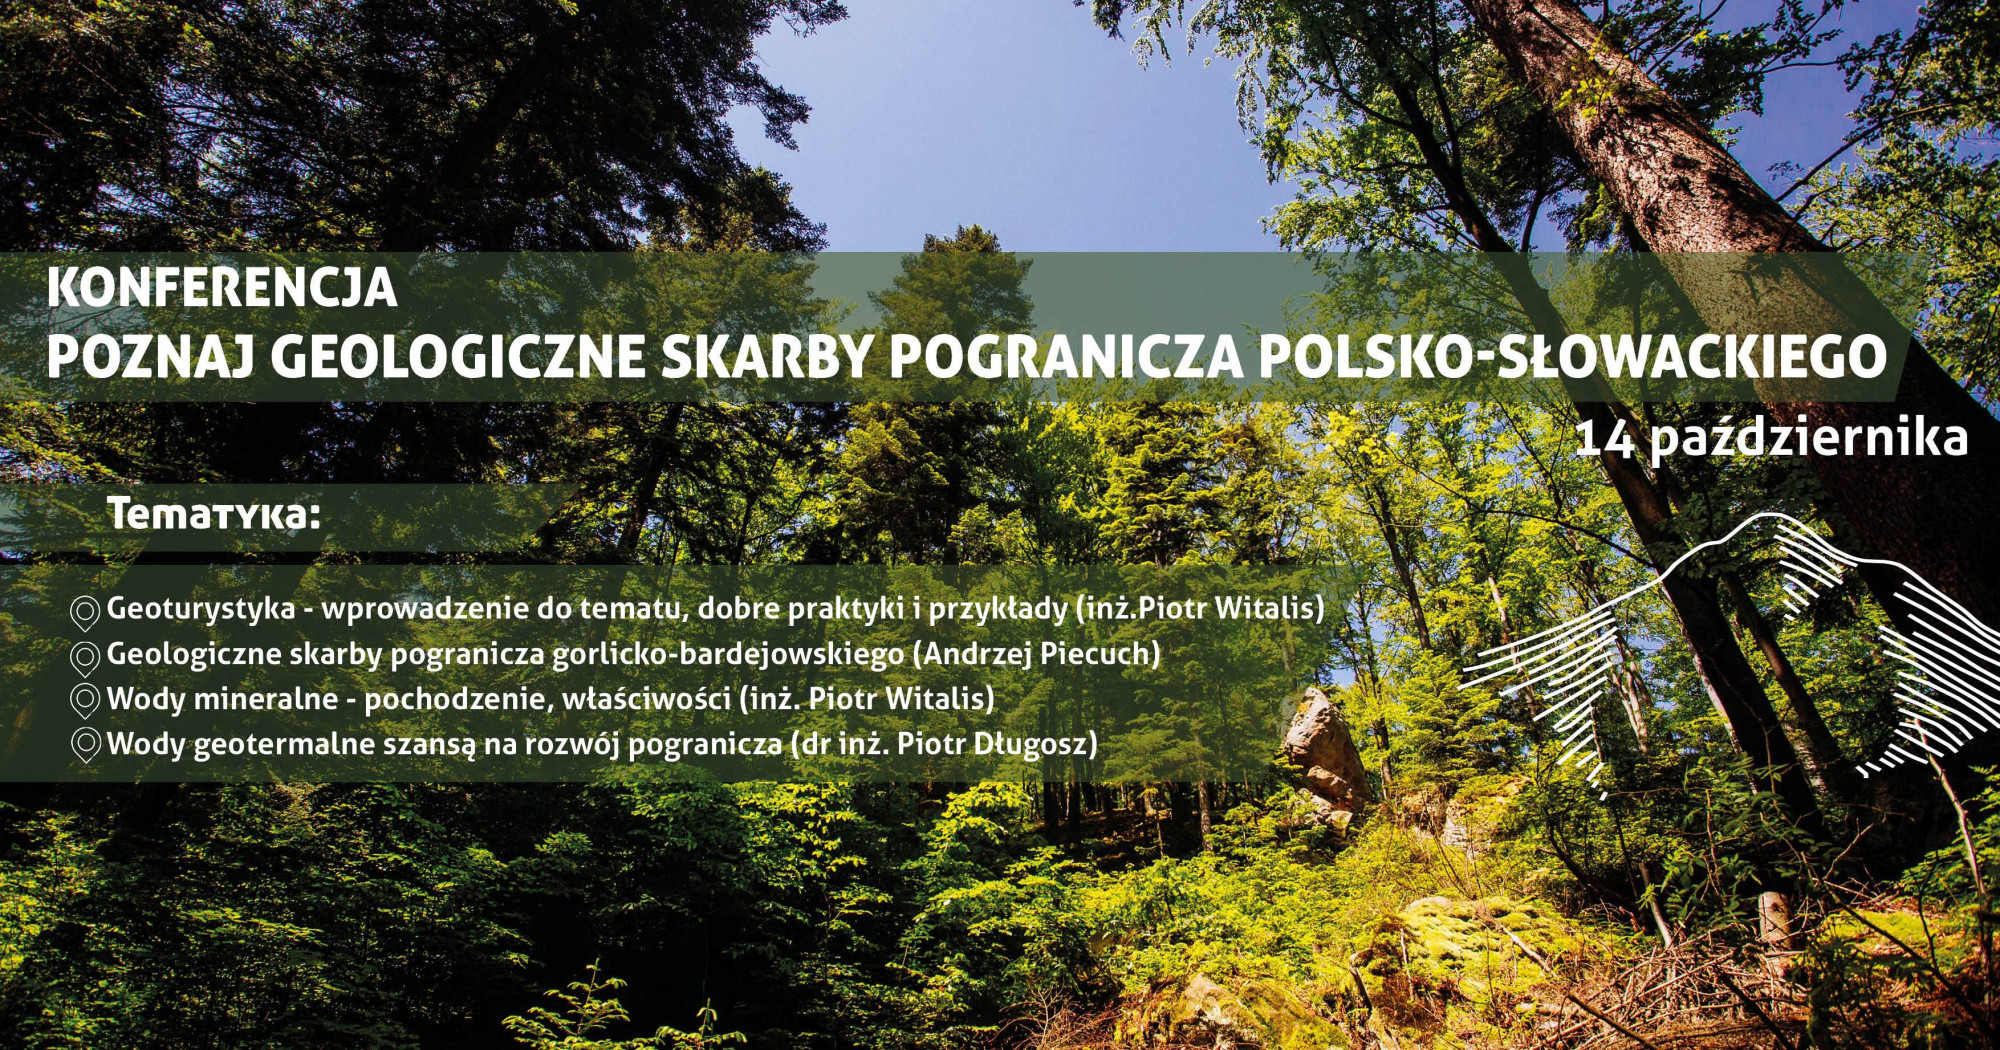 Zapisy na konferencję „Poznaj geologiczne skarby pogranicza polsko-słowackiego” zamknięte